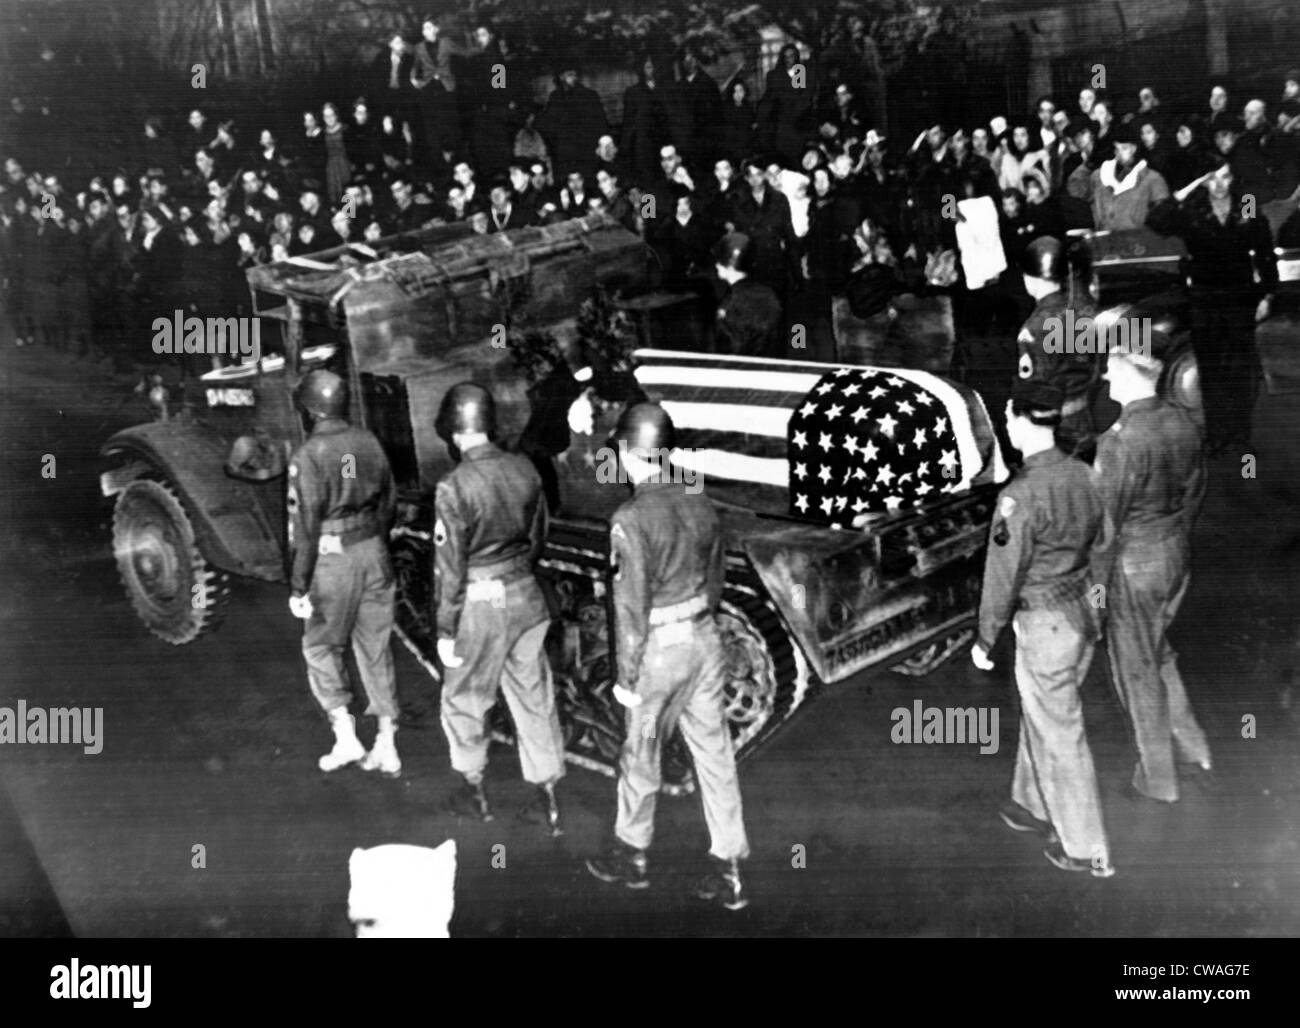 Lt. General George S. Patton in Richtung seine letzte Ruhestätte in Deutschland, 1945. Höflichkeit: CSU Archive / Everett Stockfoto